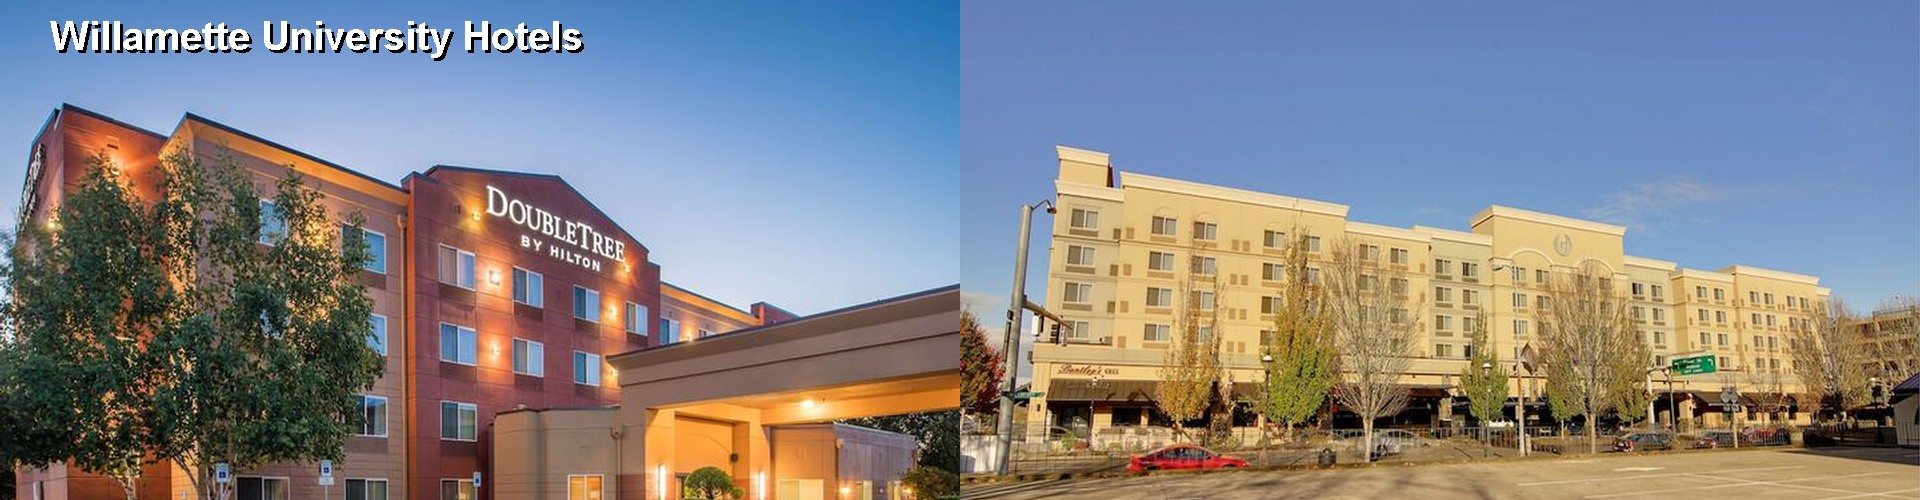 4 Best Hotels near Willamette University